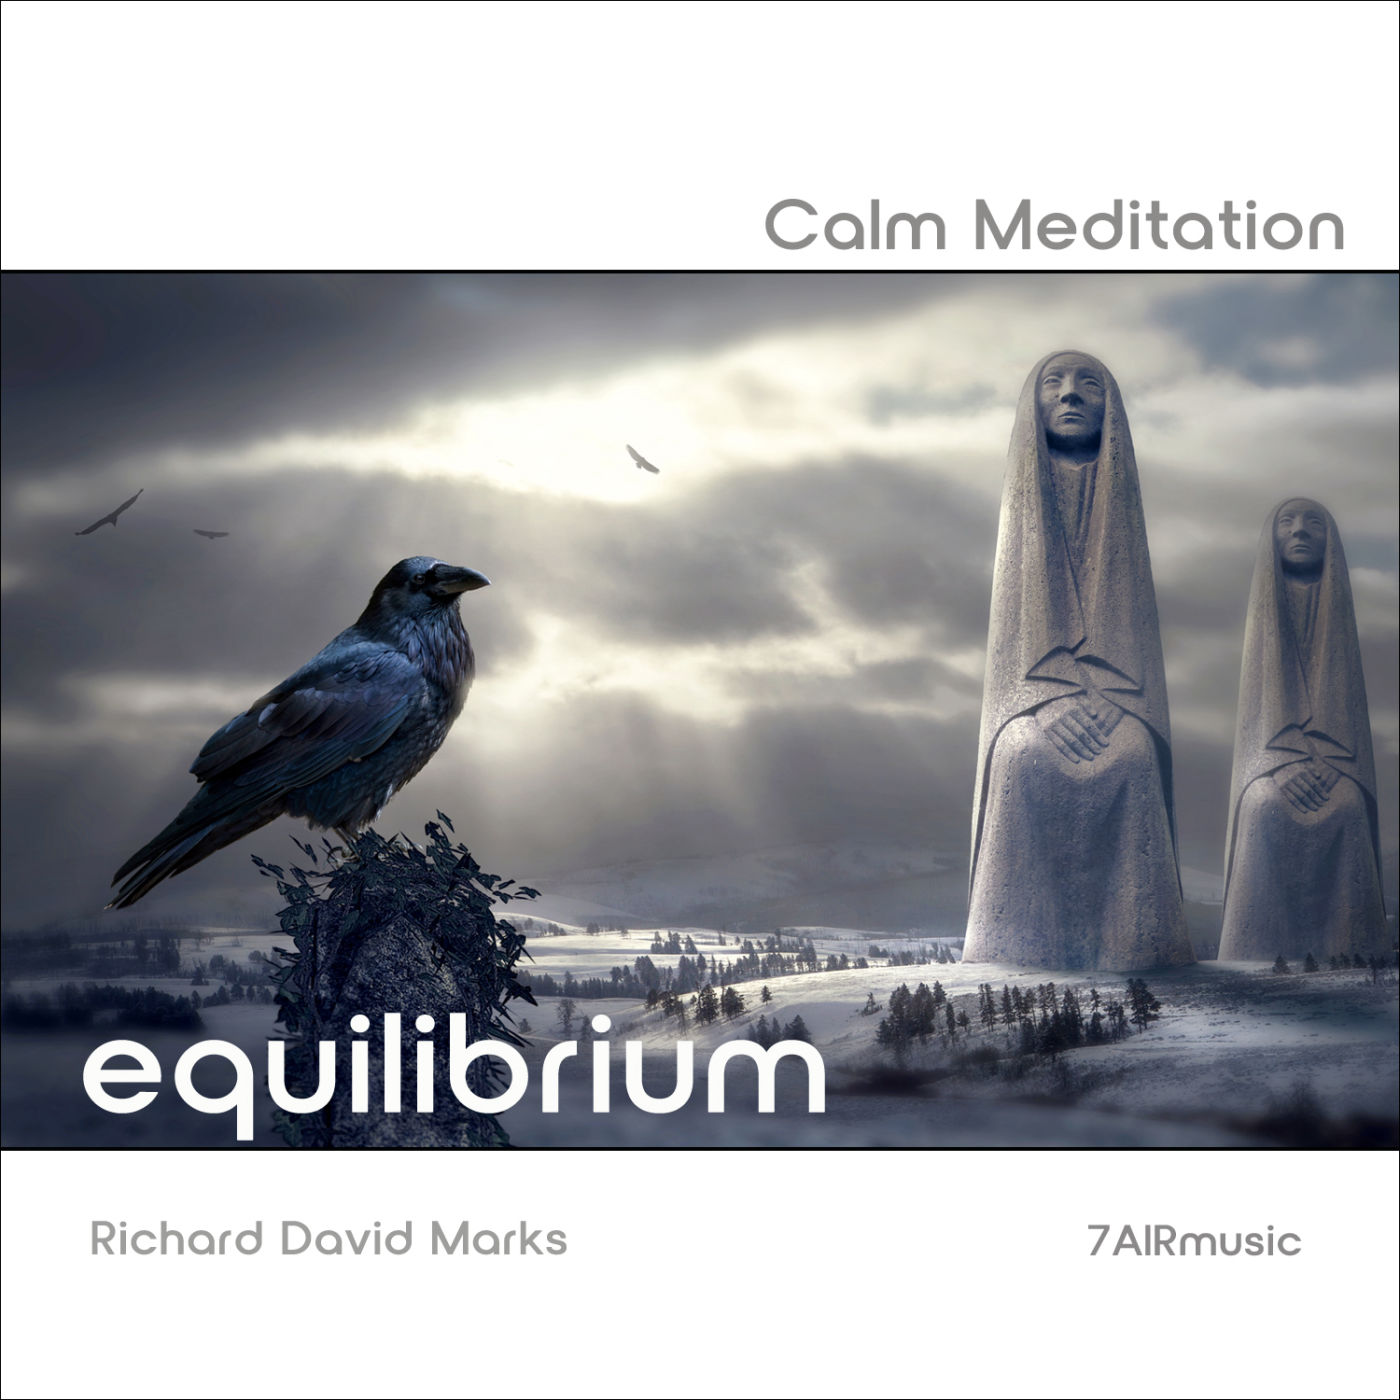 Calm meditation Album